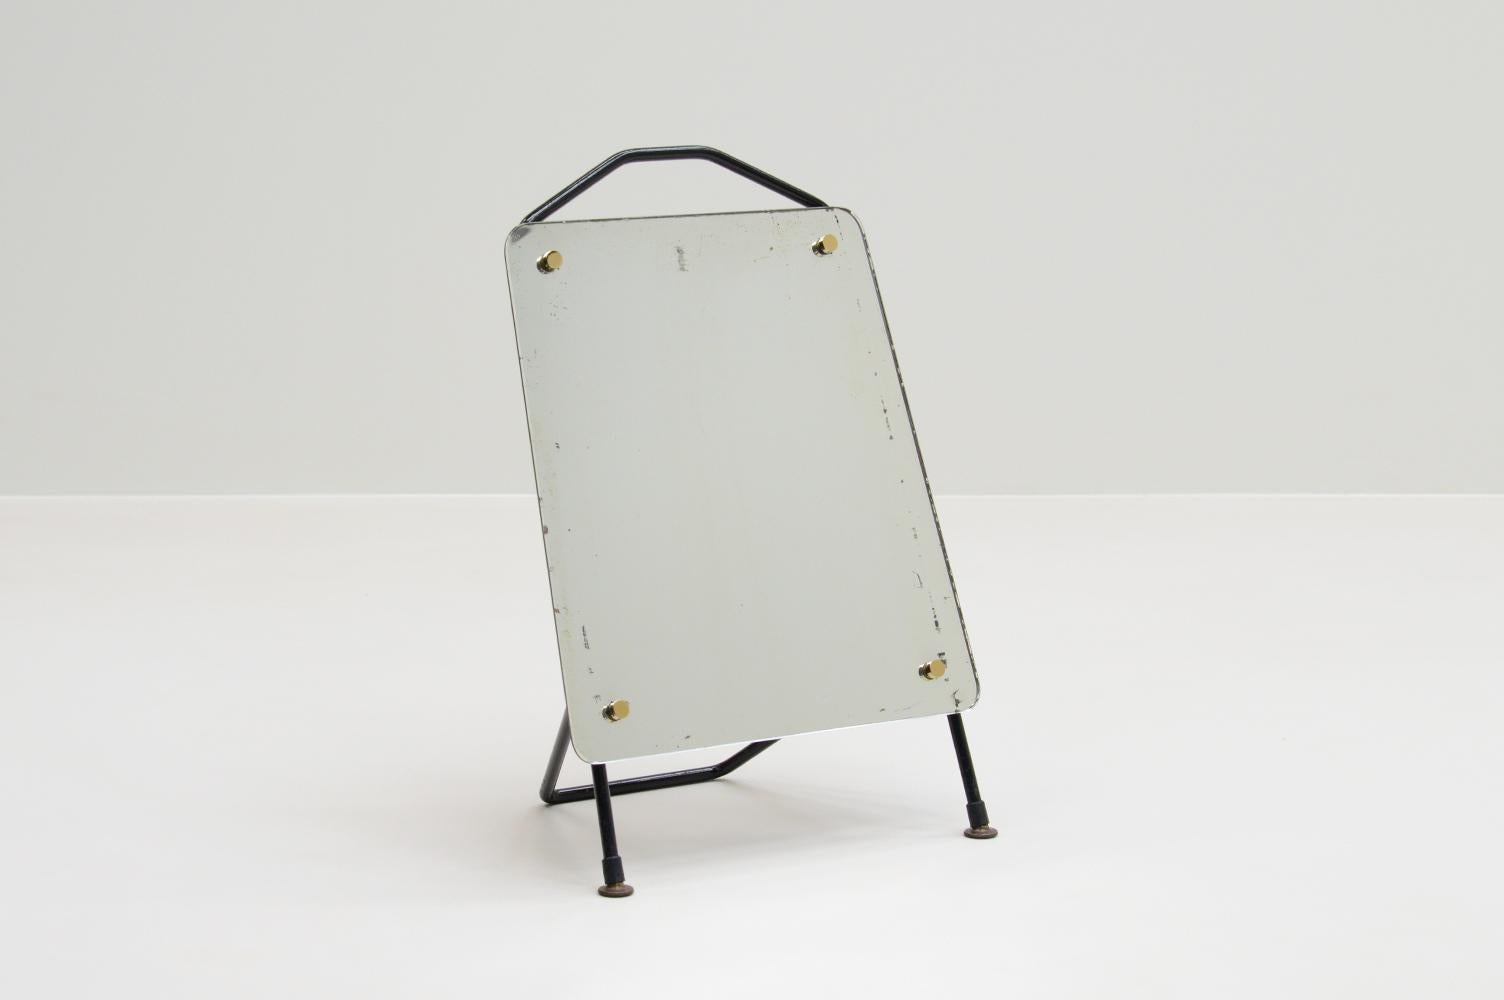 Tisch- oder Schuhspiegel, Frankreich, 1960er-Jahre. Schwarzer Metallrahmen, spitz zulaufender Spiegel und Messingdetails. Aufgrund des Winkels kann er als Tisch- oder Schuhspiegel verwendet werden. Der Spiegel hat eine schöne Patina. In gutem